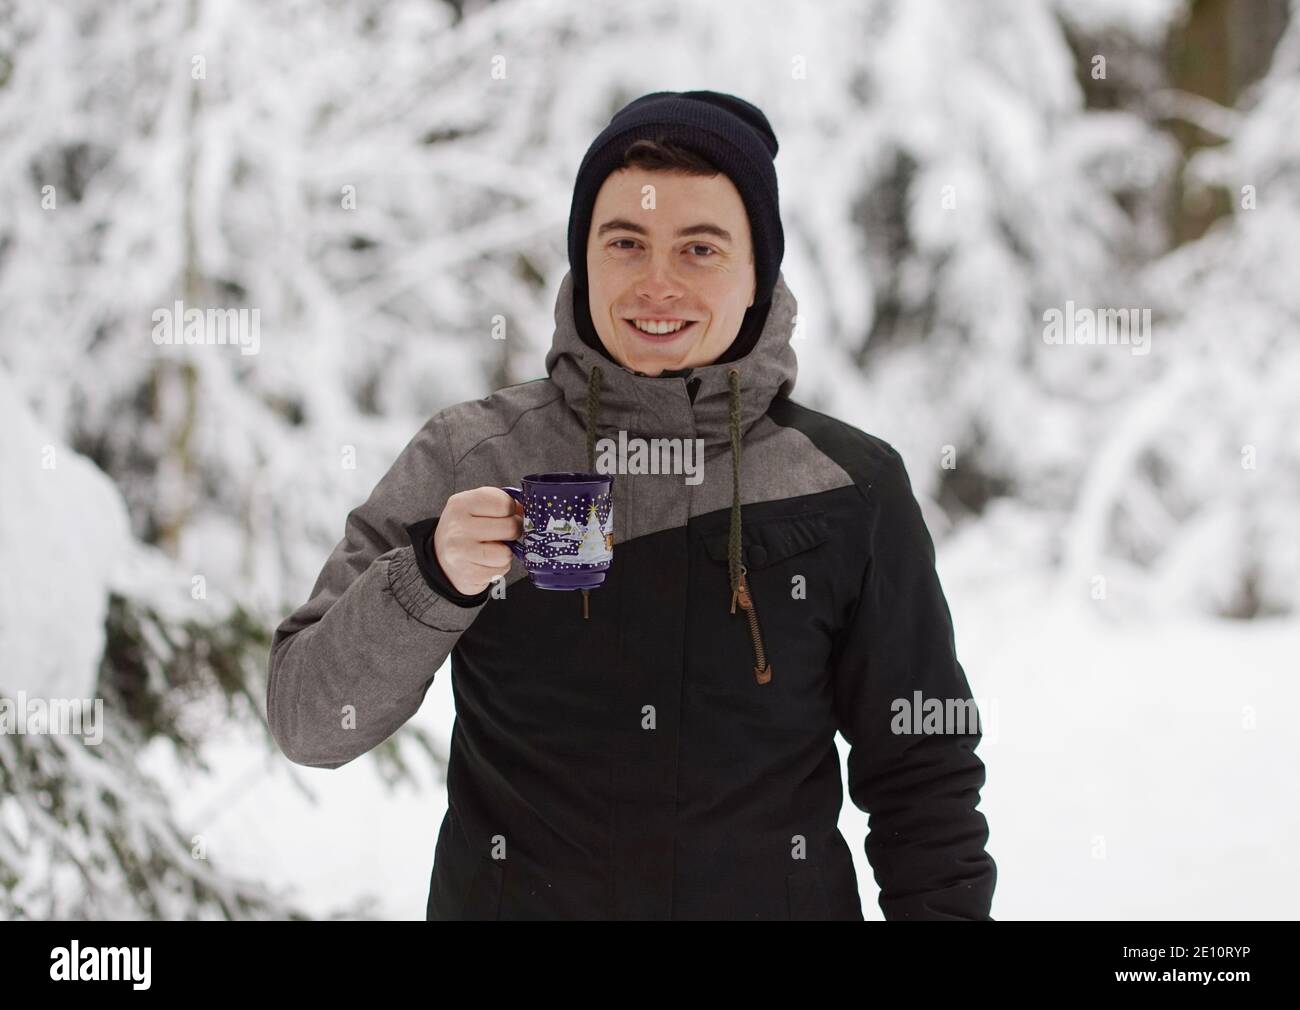 Winter Time - Mann im Schnee, Aufwärmen mit einem heißen Getränk. Eine Tasse Tee oder Glühwein halten. Stockfoto